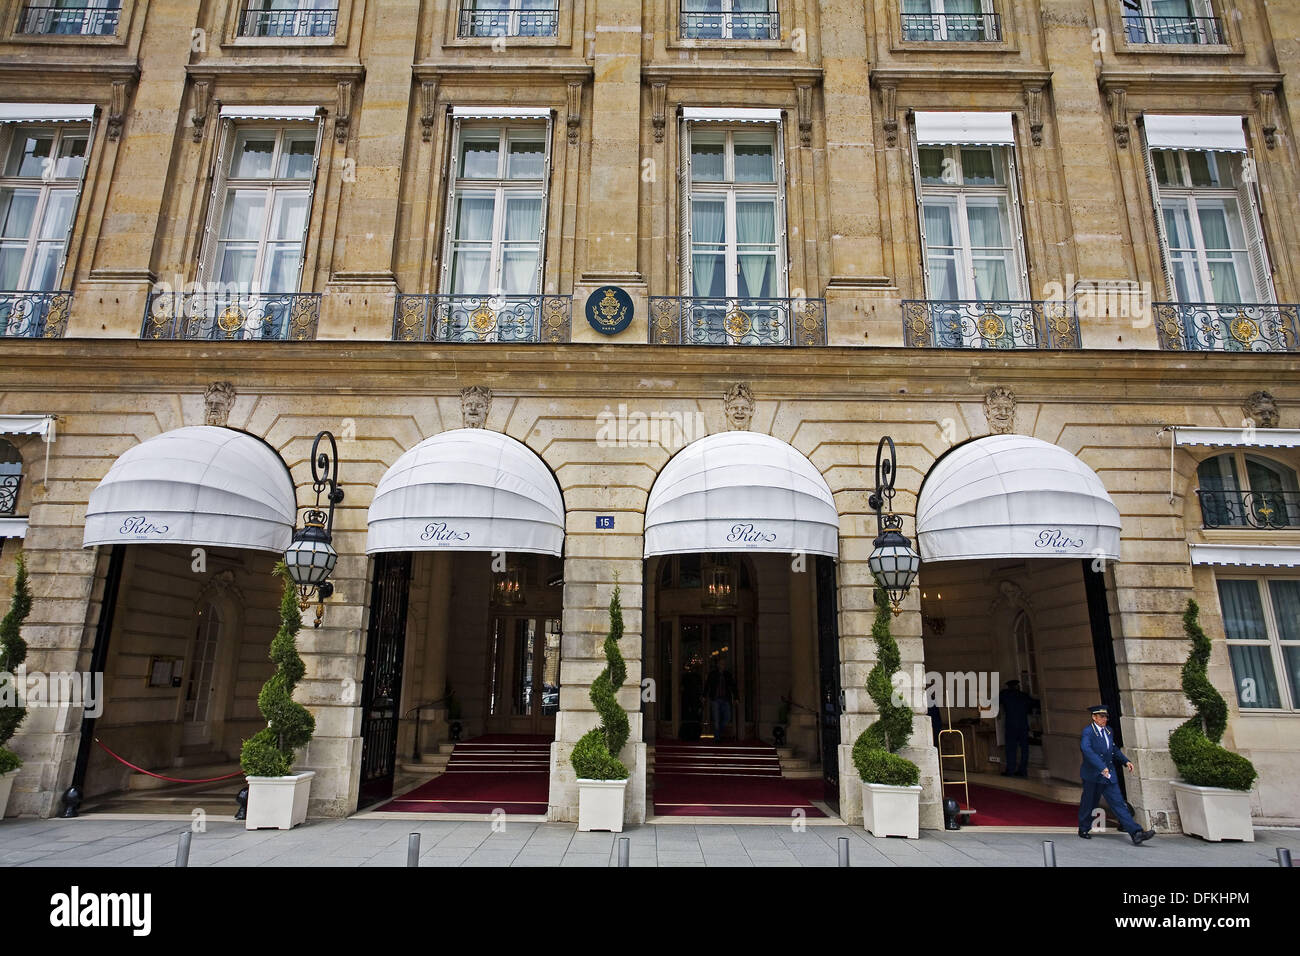 Cartier. Place Vendome, Paris France Stock Photo - Alamy